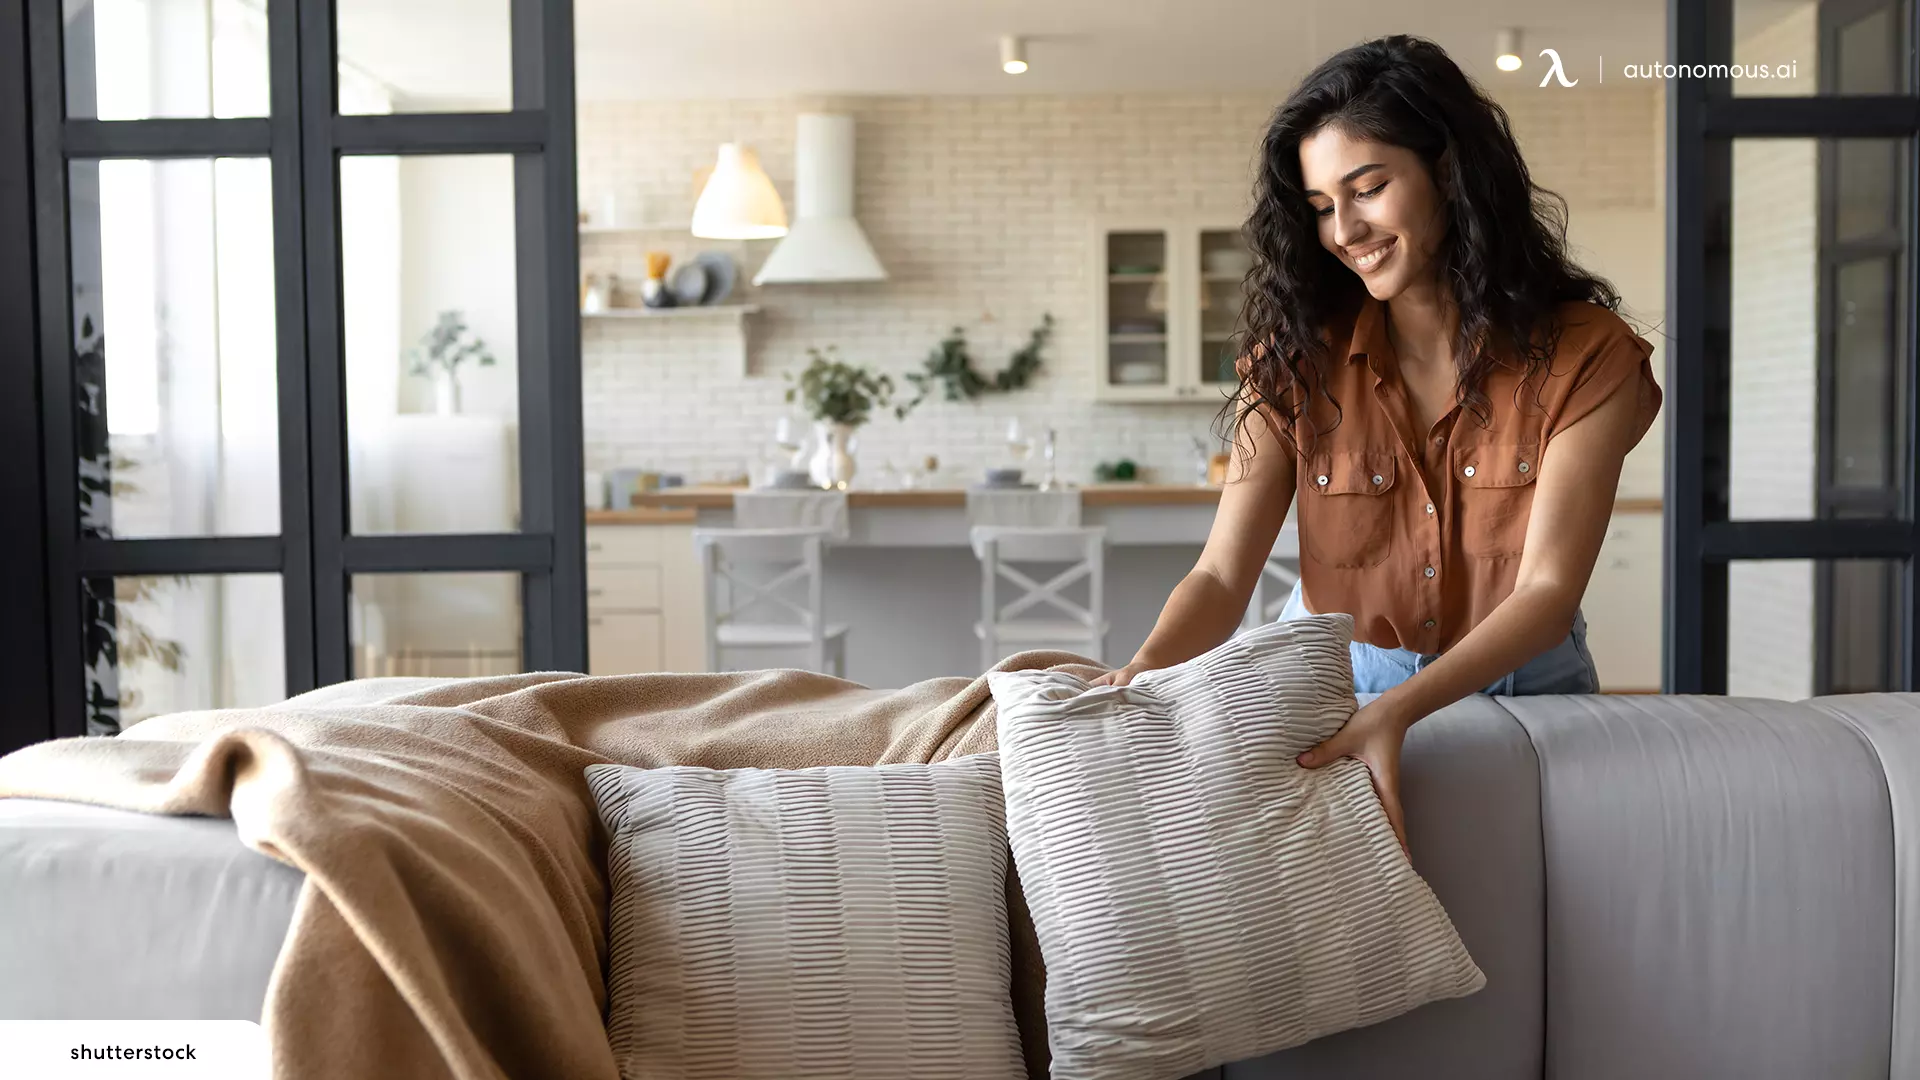 Comfy Pillows - outdoor room ideas